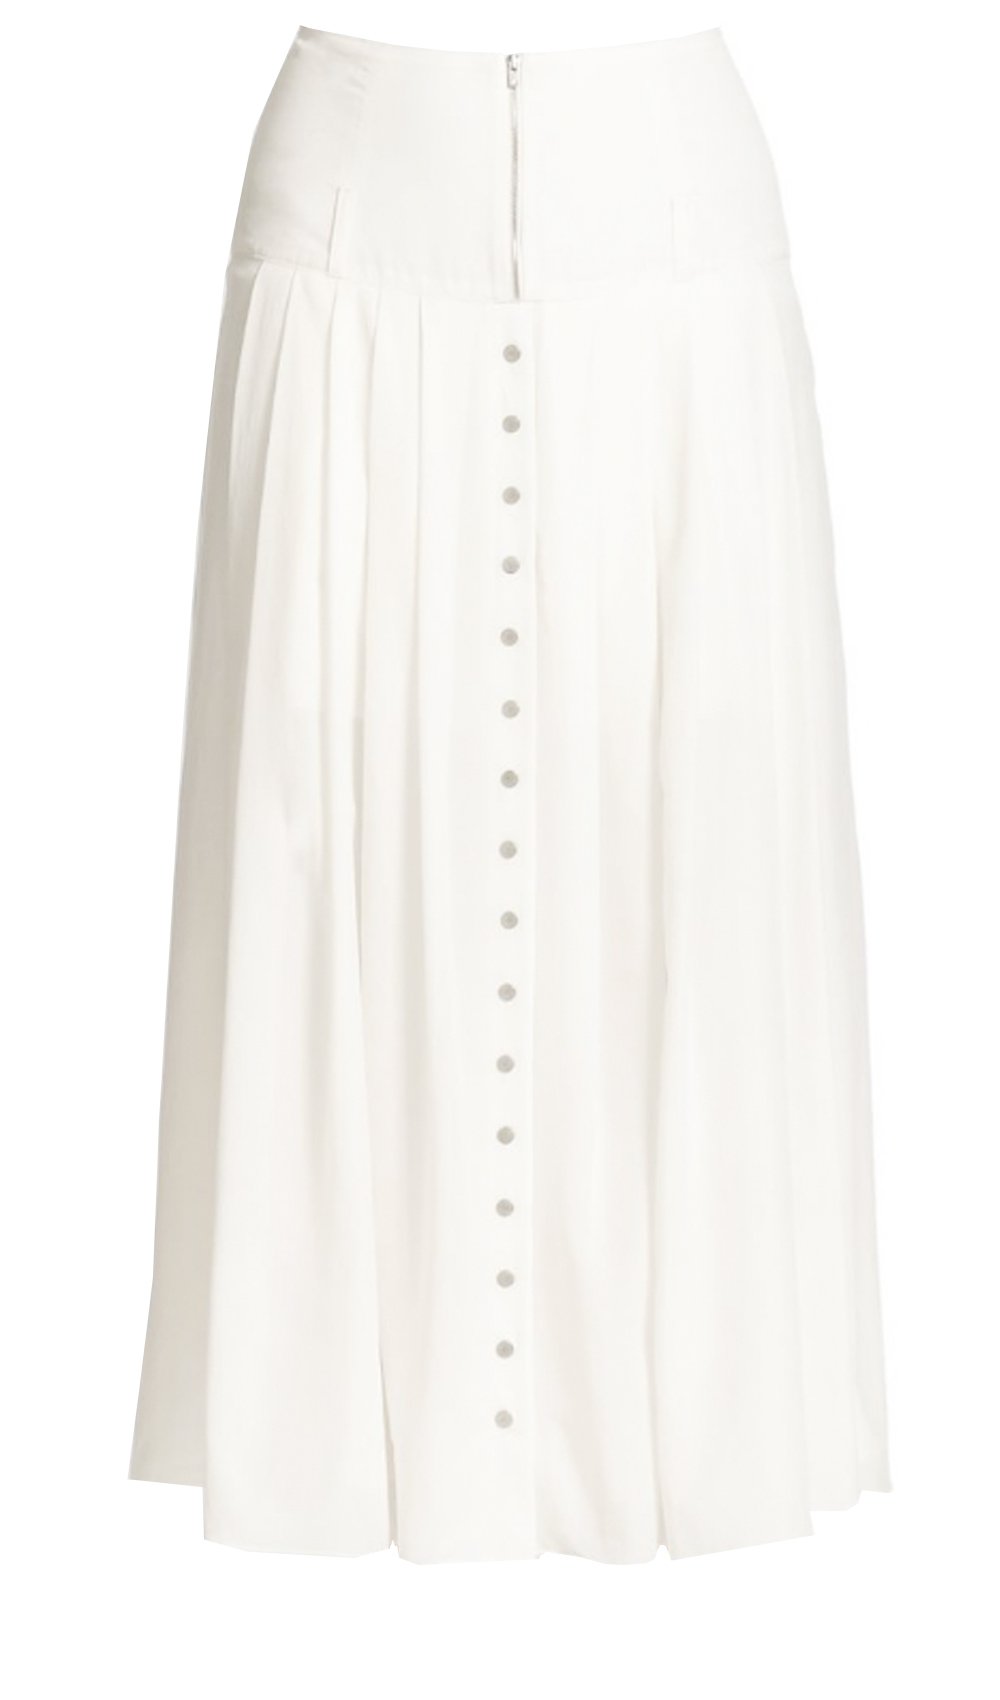 Plain Skort White Women's Sports Skirts & Skorts (Women's) - Walmart.com